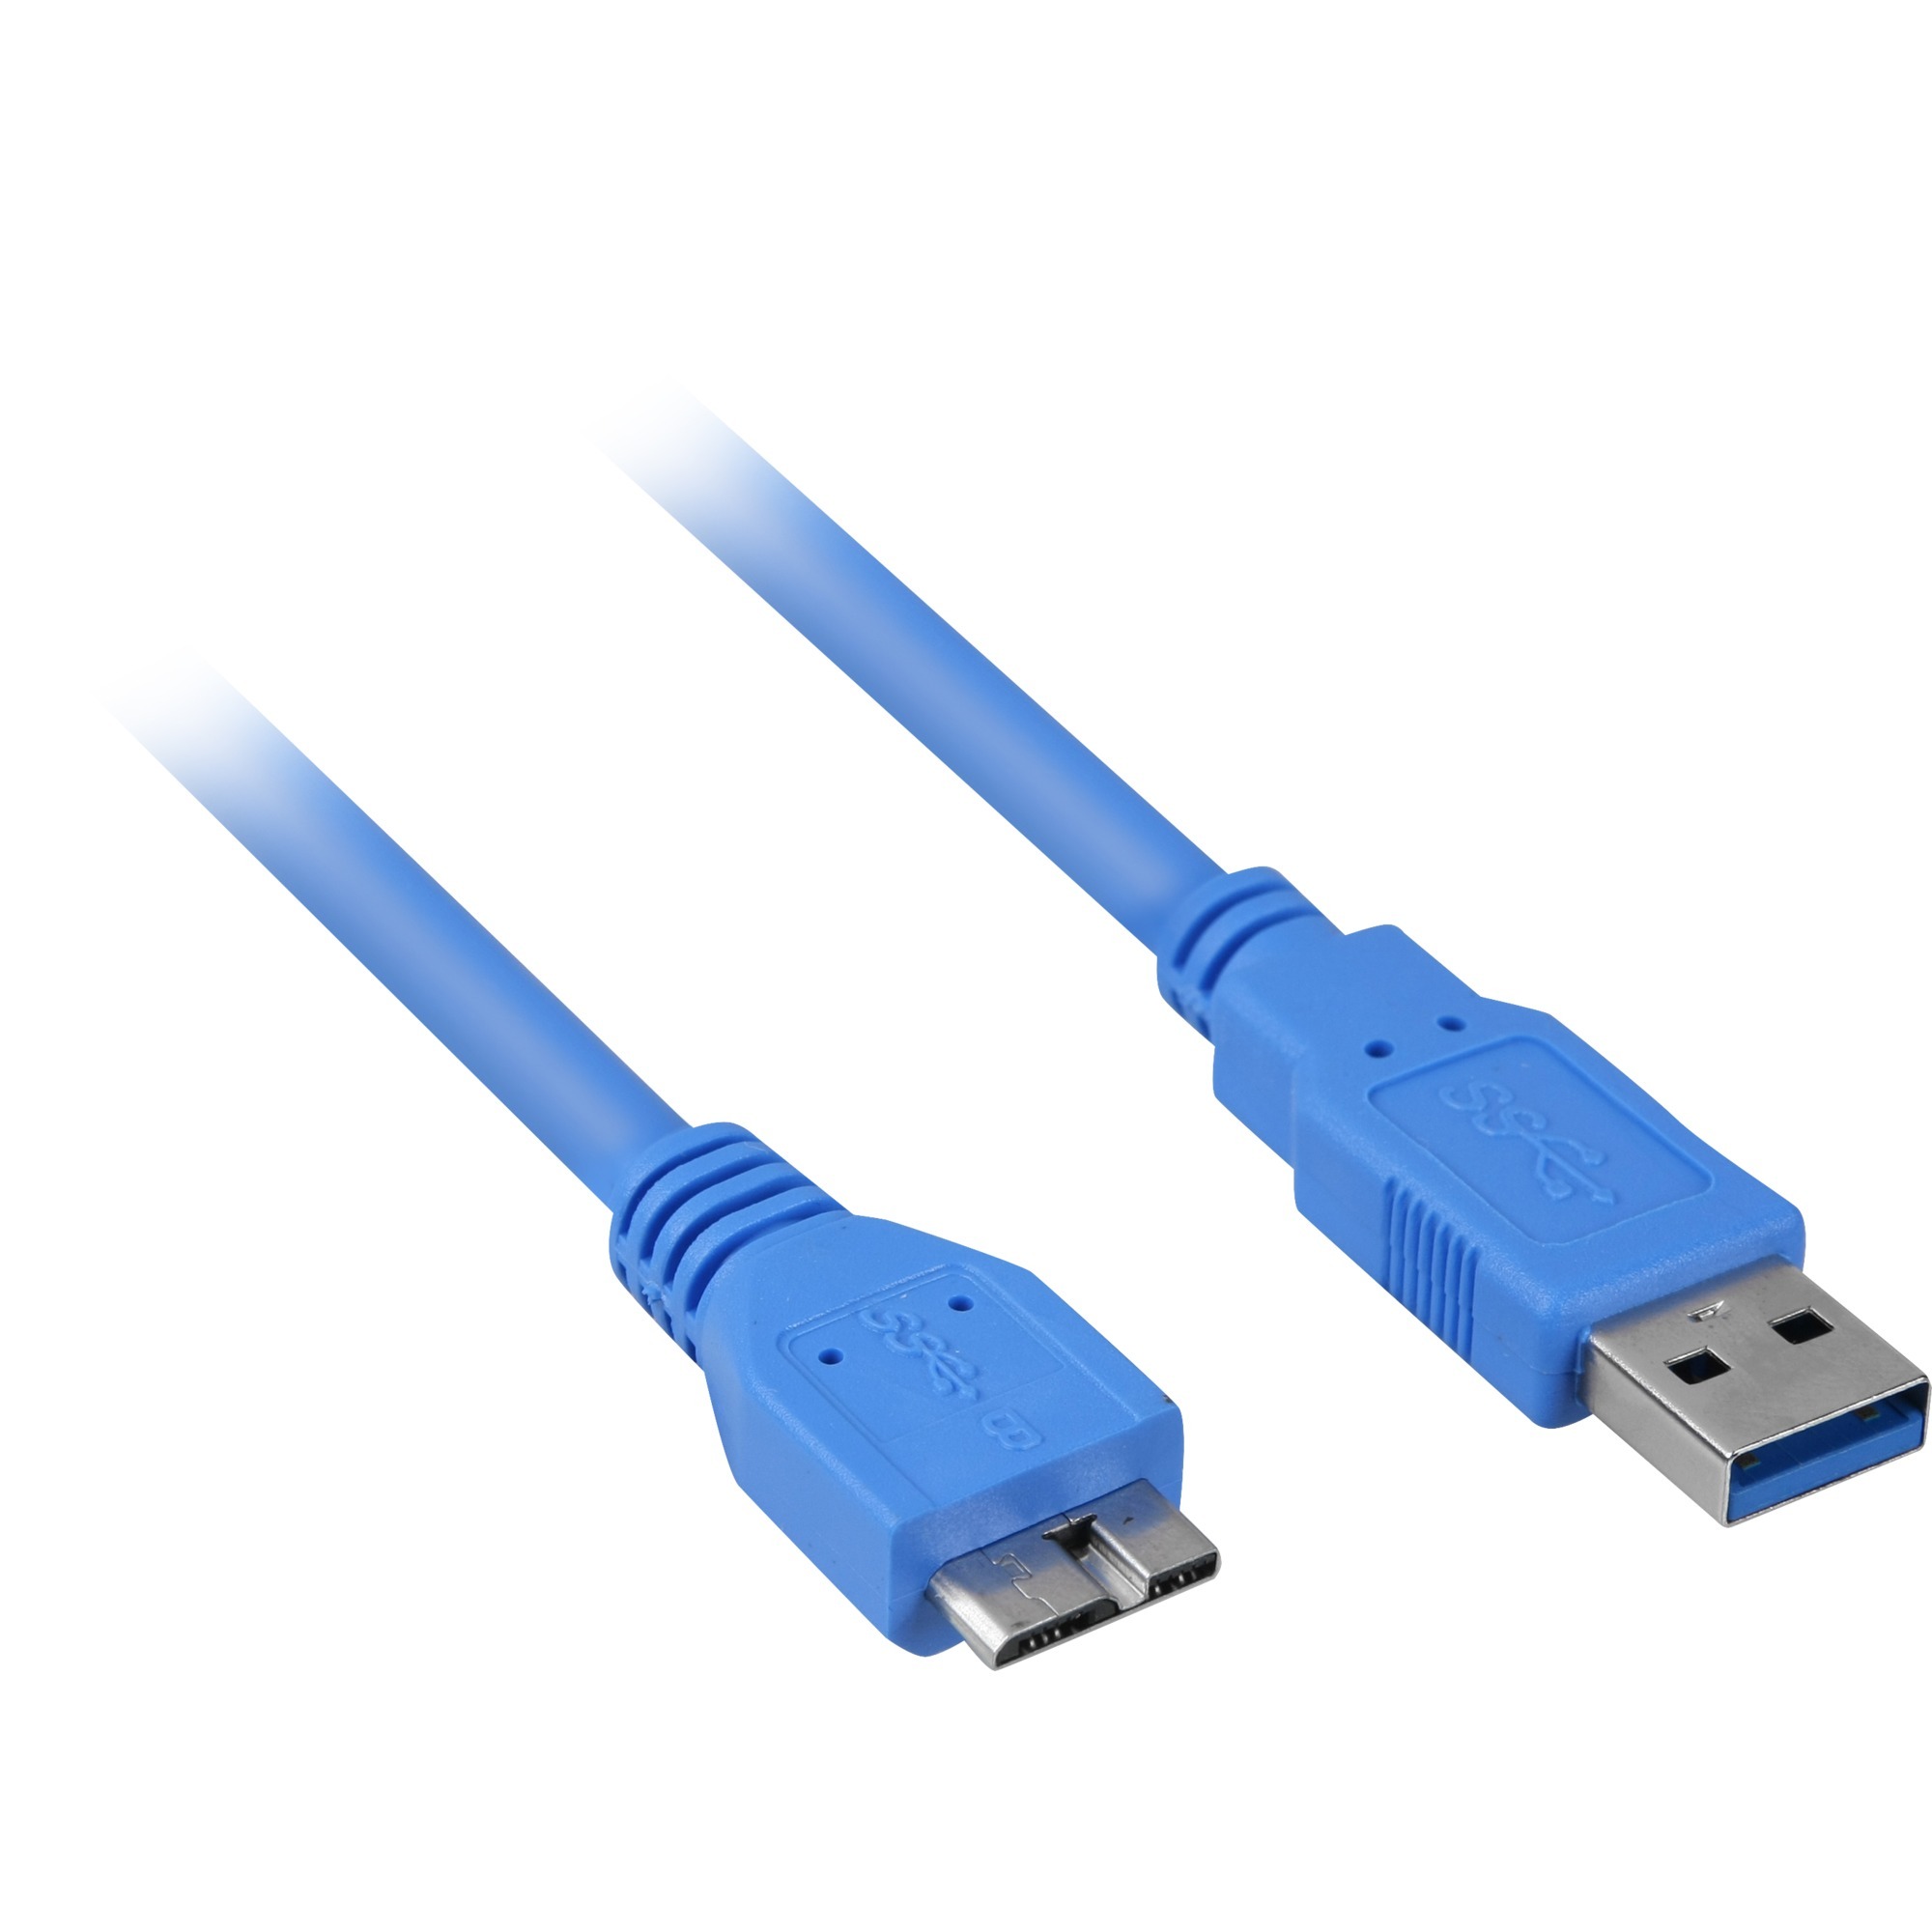 Image of Alternate - Kabel USB 3.0 A -B Micro online einkaufen bei Alternate